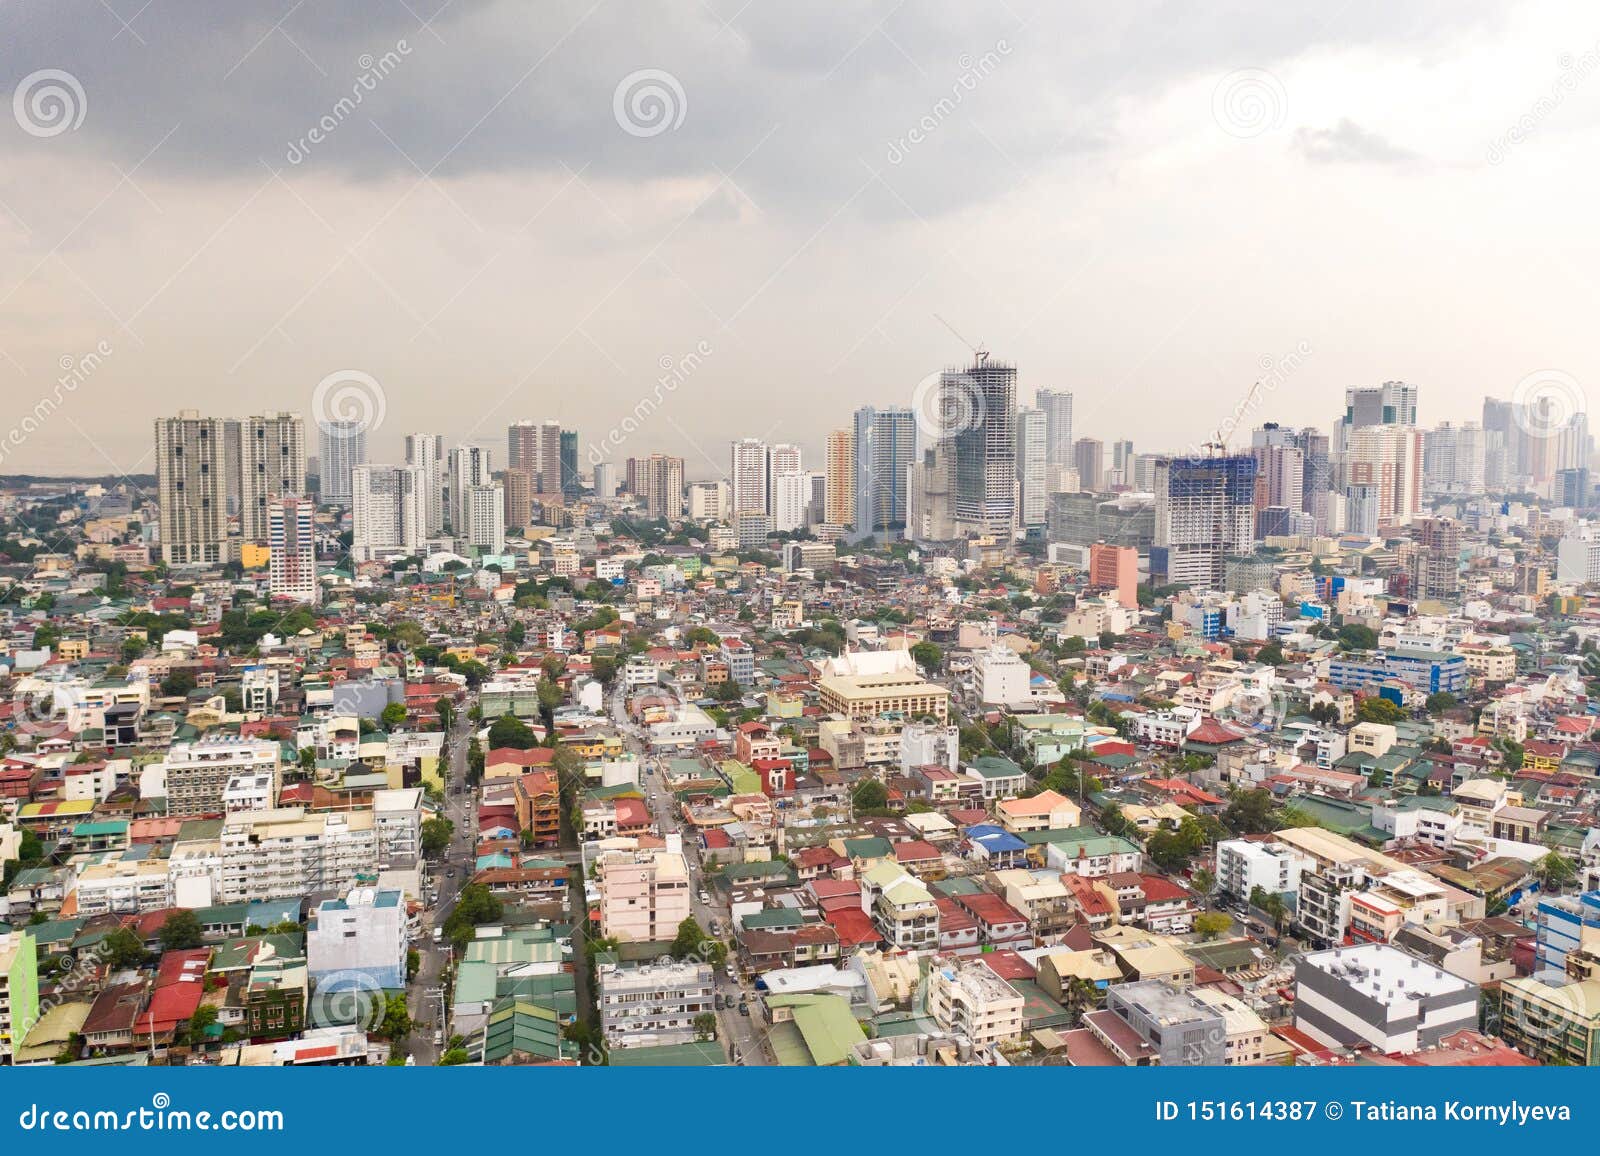 菲律宾马尼拉现代建筑 库存图片. 图片 包括有 增长, 拱道, 发展, 地铁, 房子, 摩天大楼, 吕宋 - 158207505